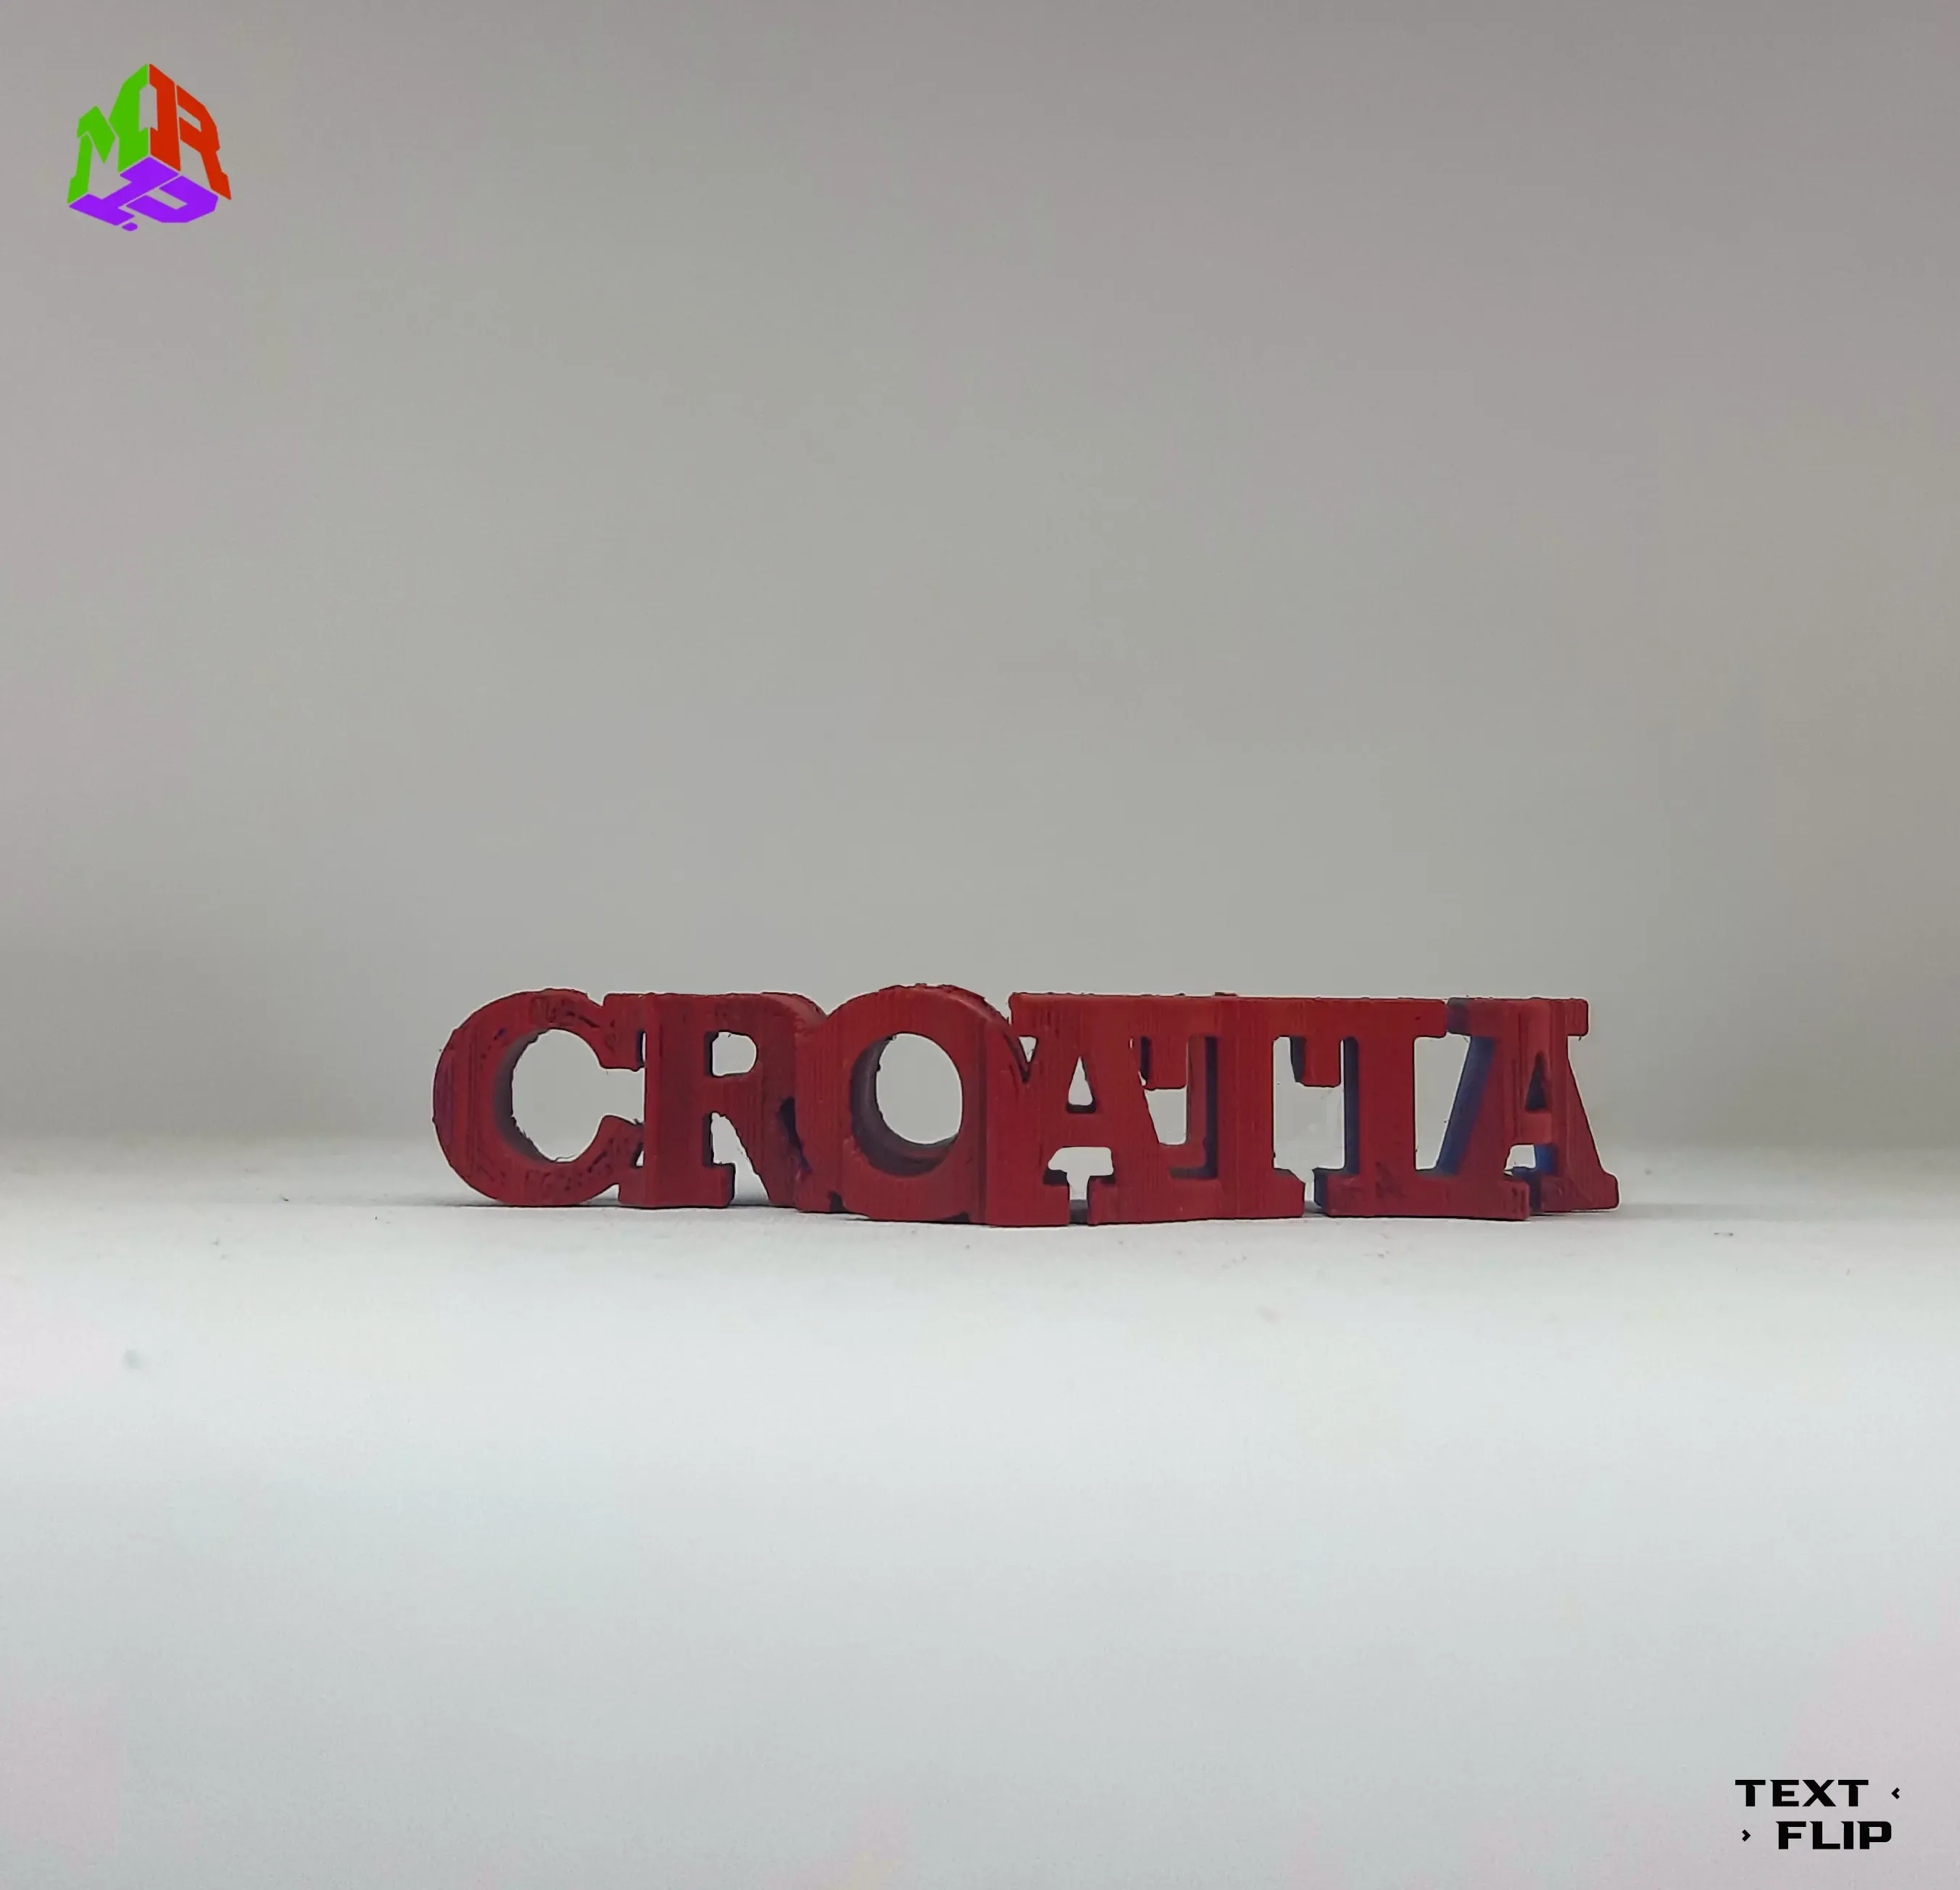 Text Flip - Croatia